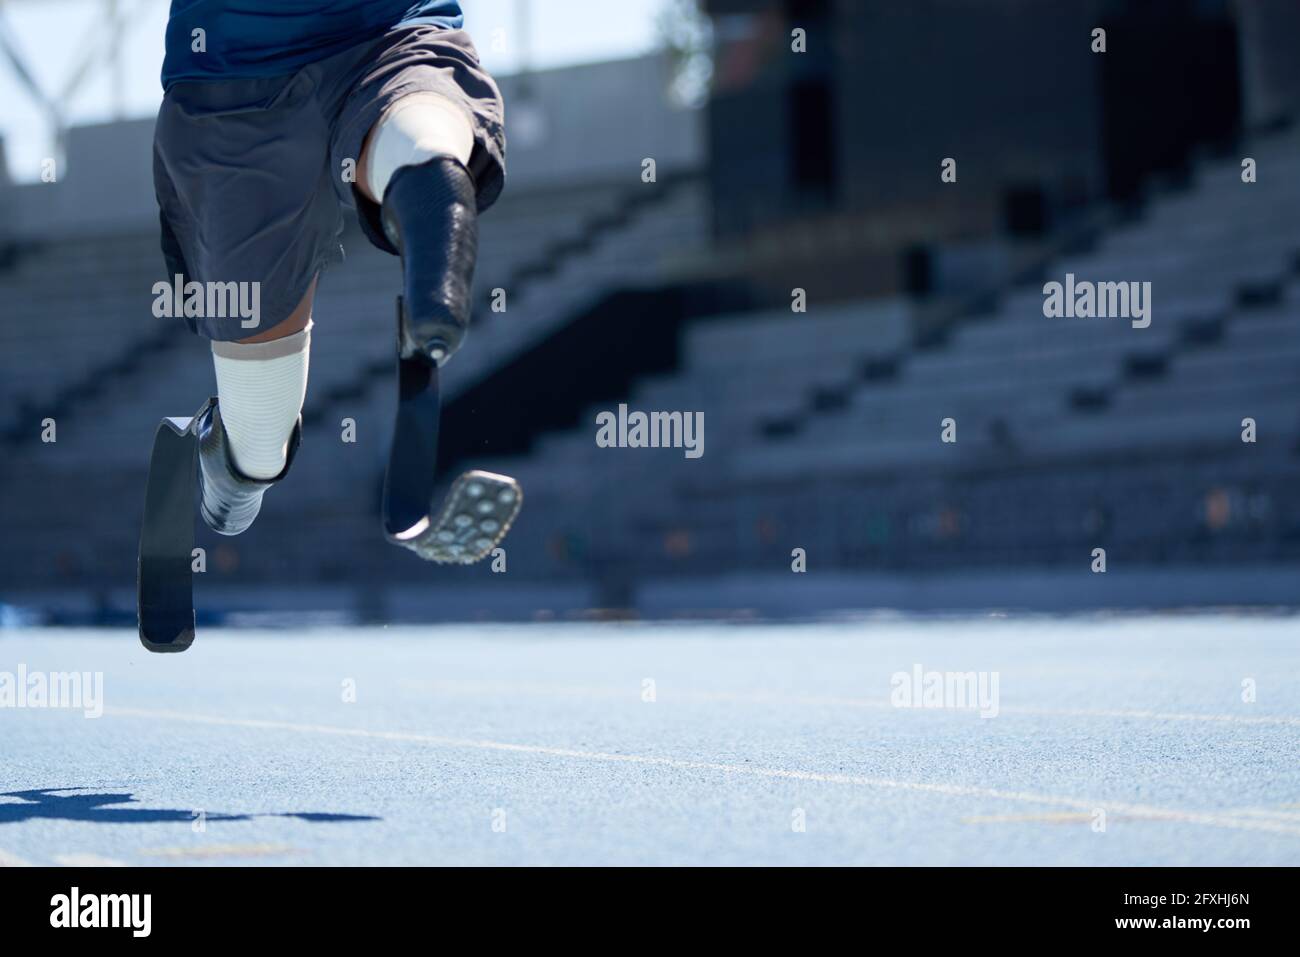 Amputierte männliche Sportlerin, die auf einer sonnigen blauen Sportstrecke sprintet Stockfoto